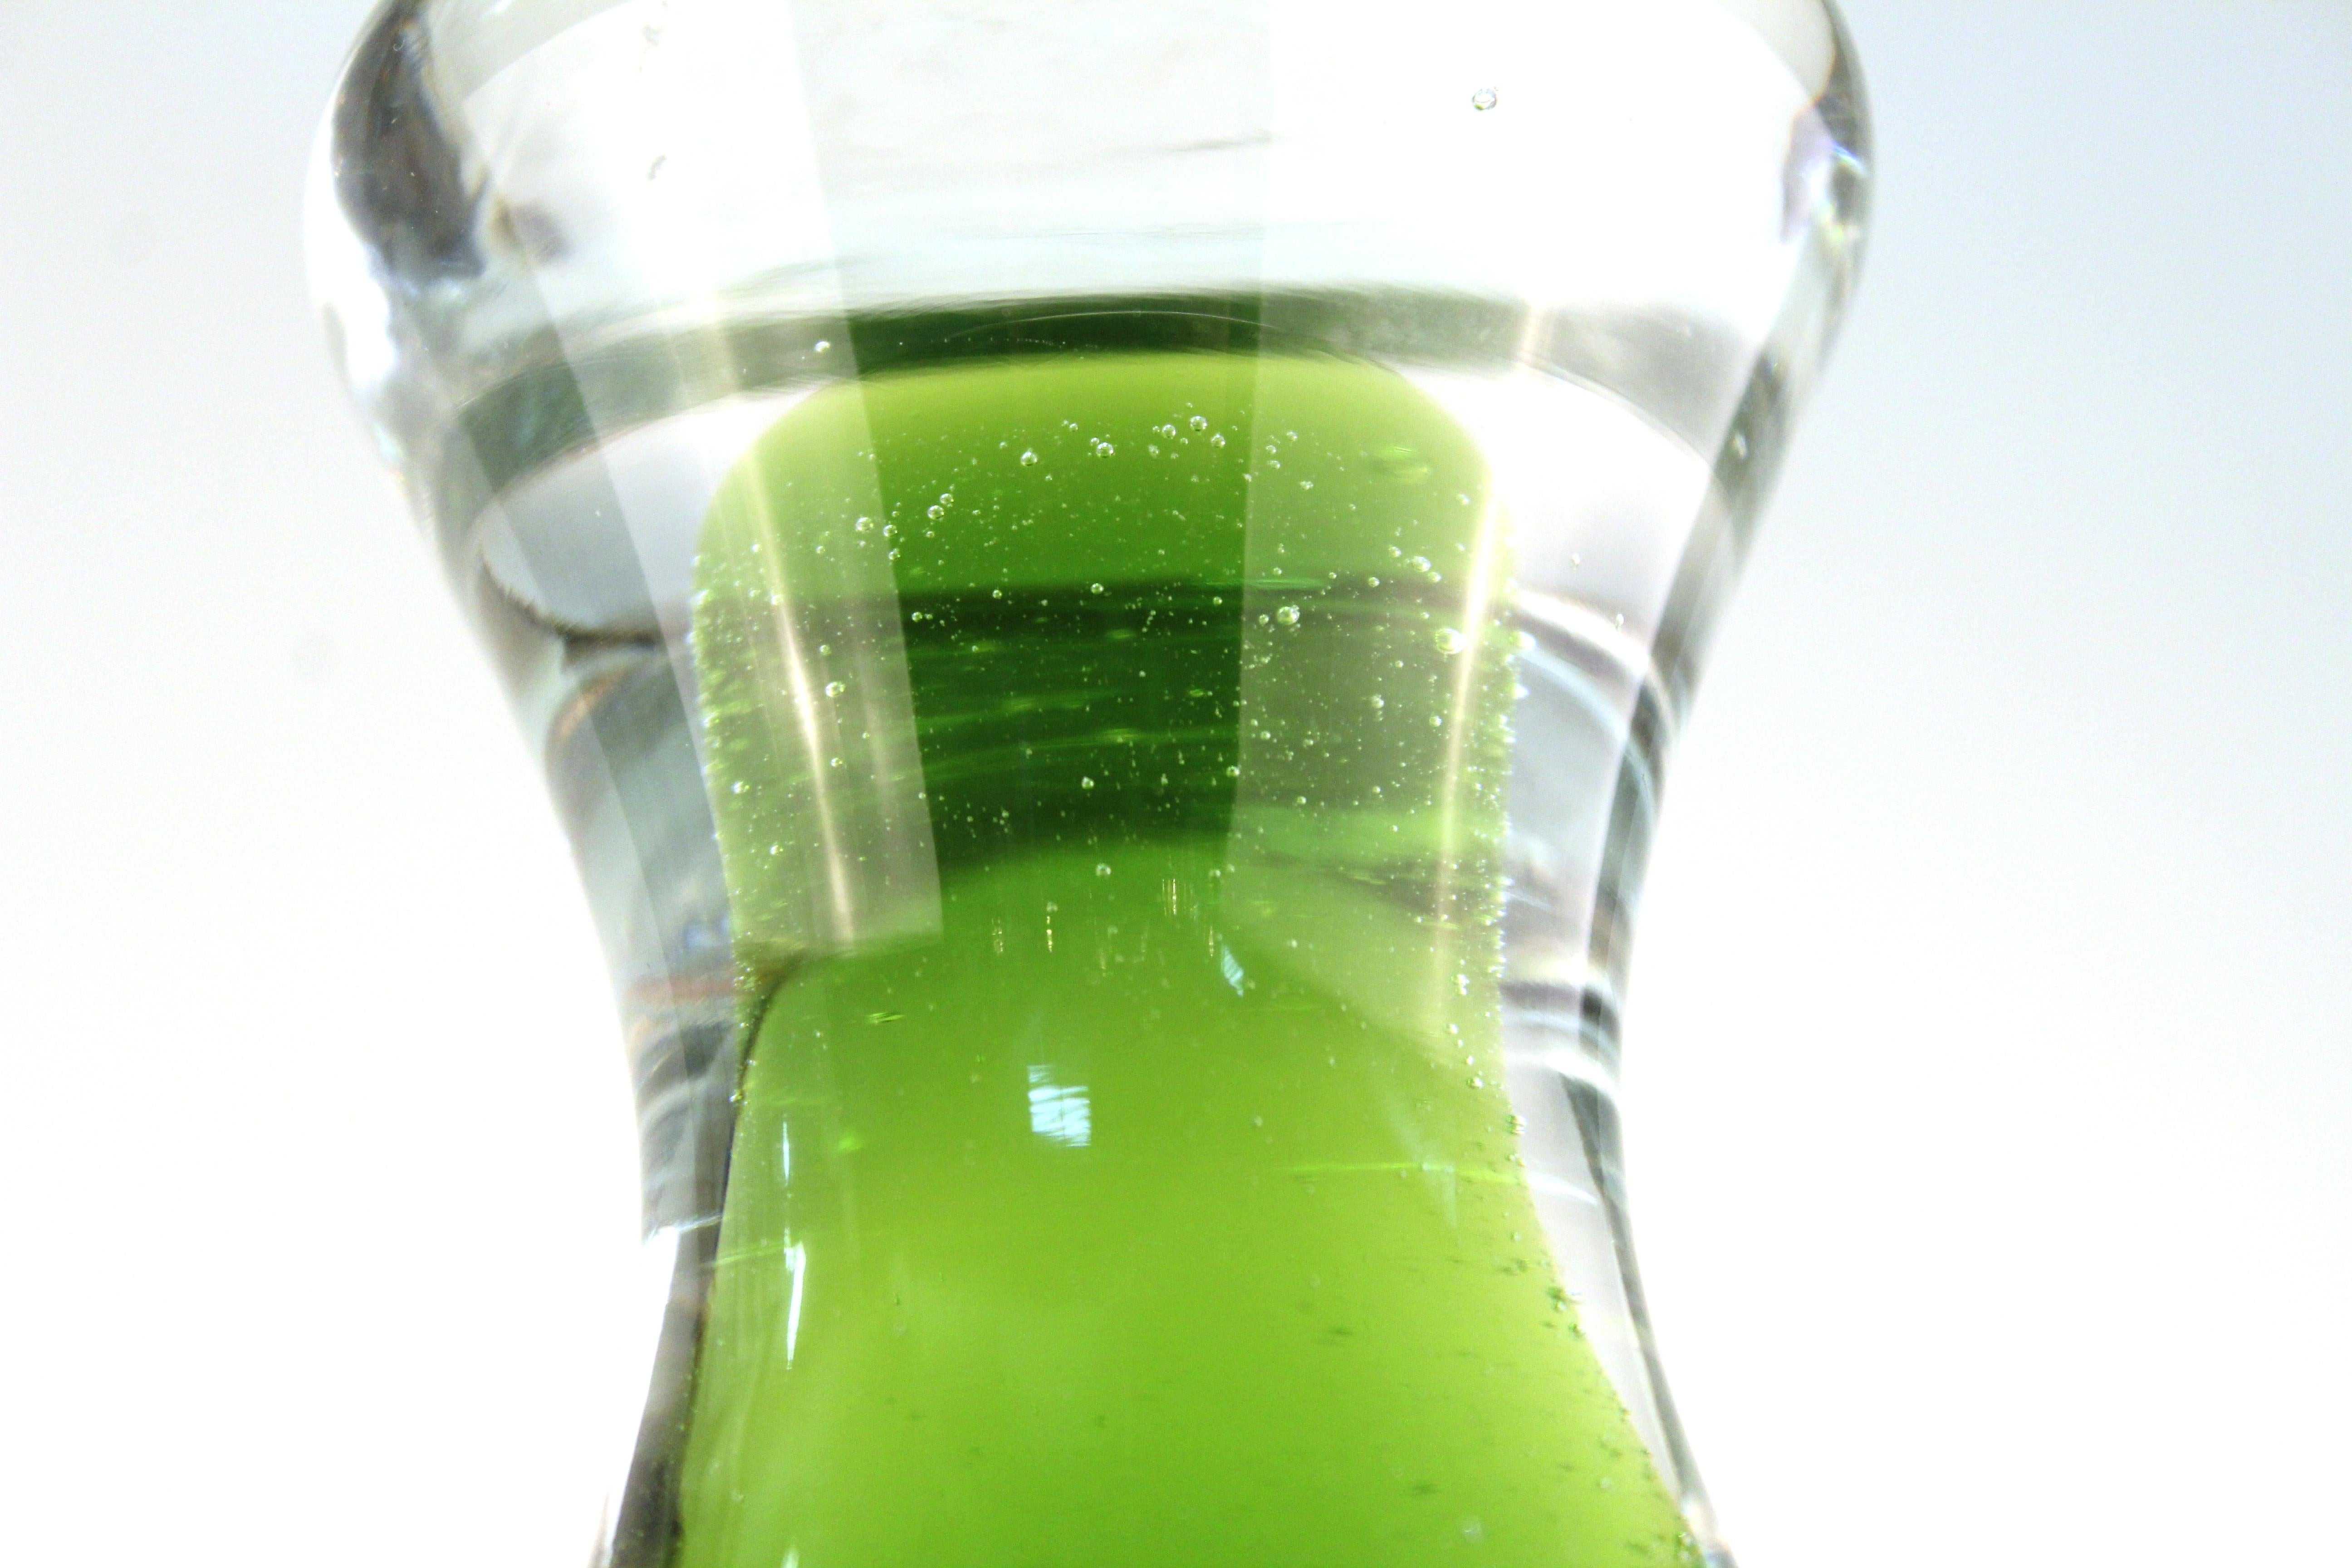 Wayne Husted for Blenko Mid-Century Modern Lime Green Glass Decanter 1